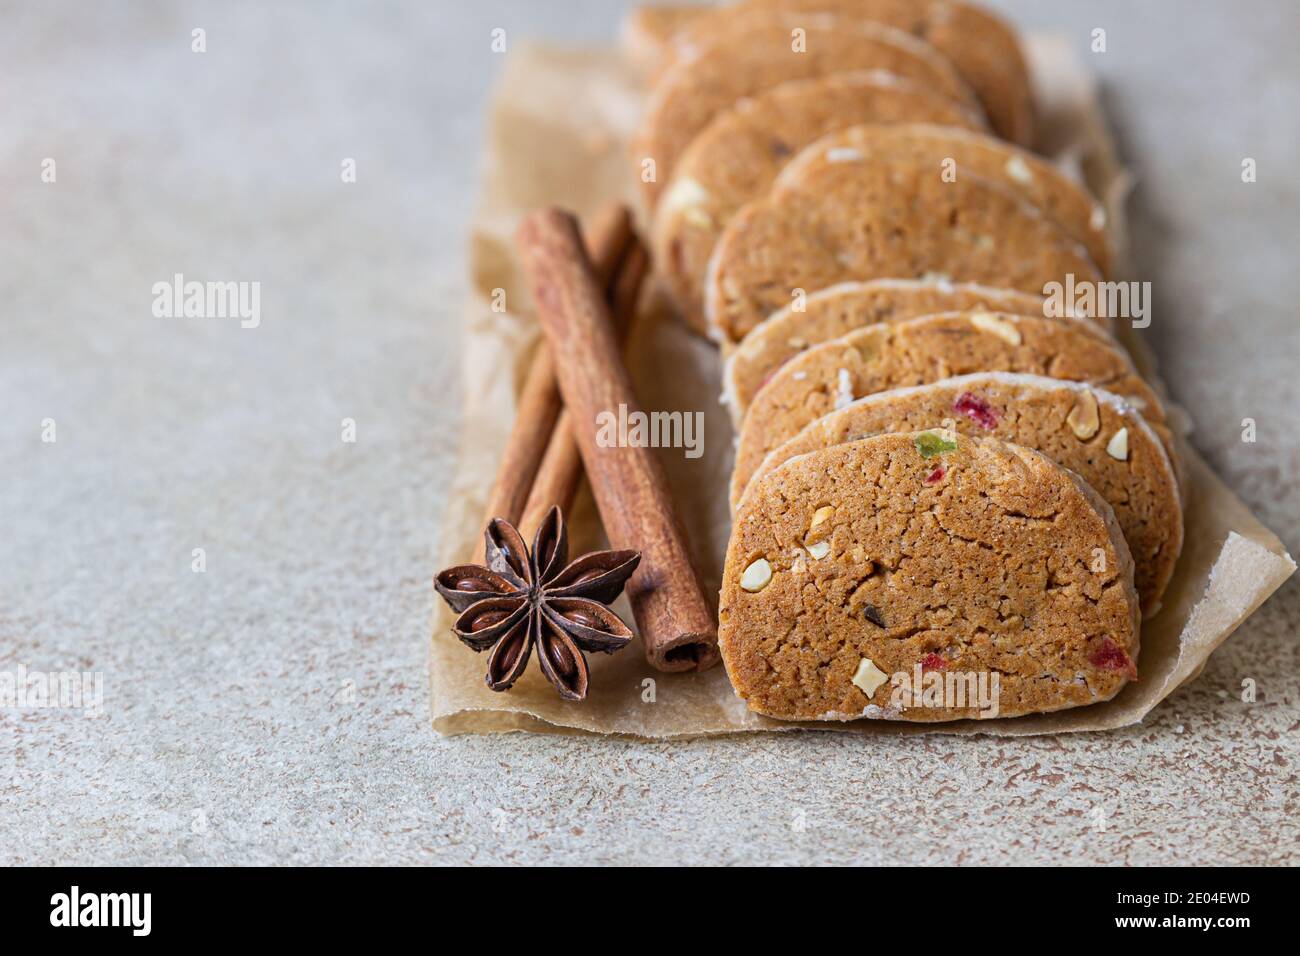 Biscuits sablés aux fruits confits sur fond de béton léger. Cookies Tutti Frutti. Mise au point sélective. Banque D'Images